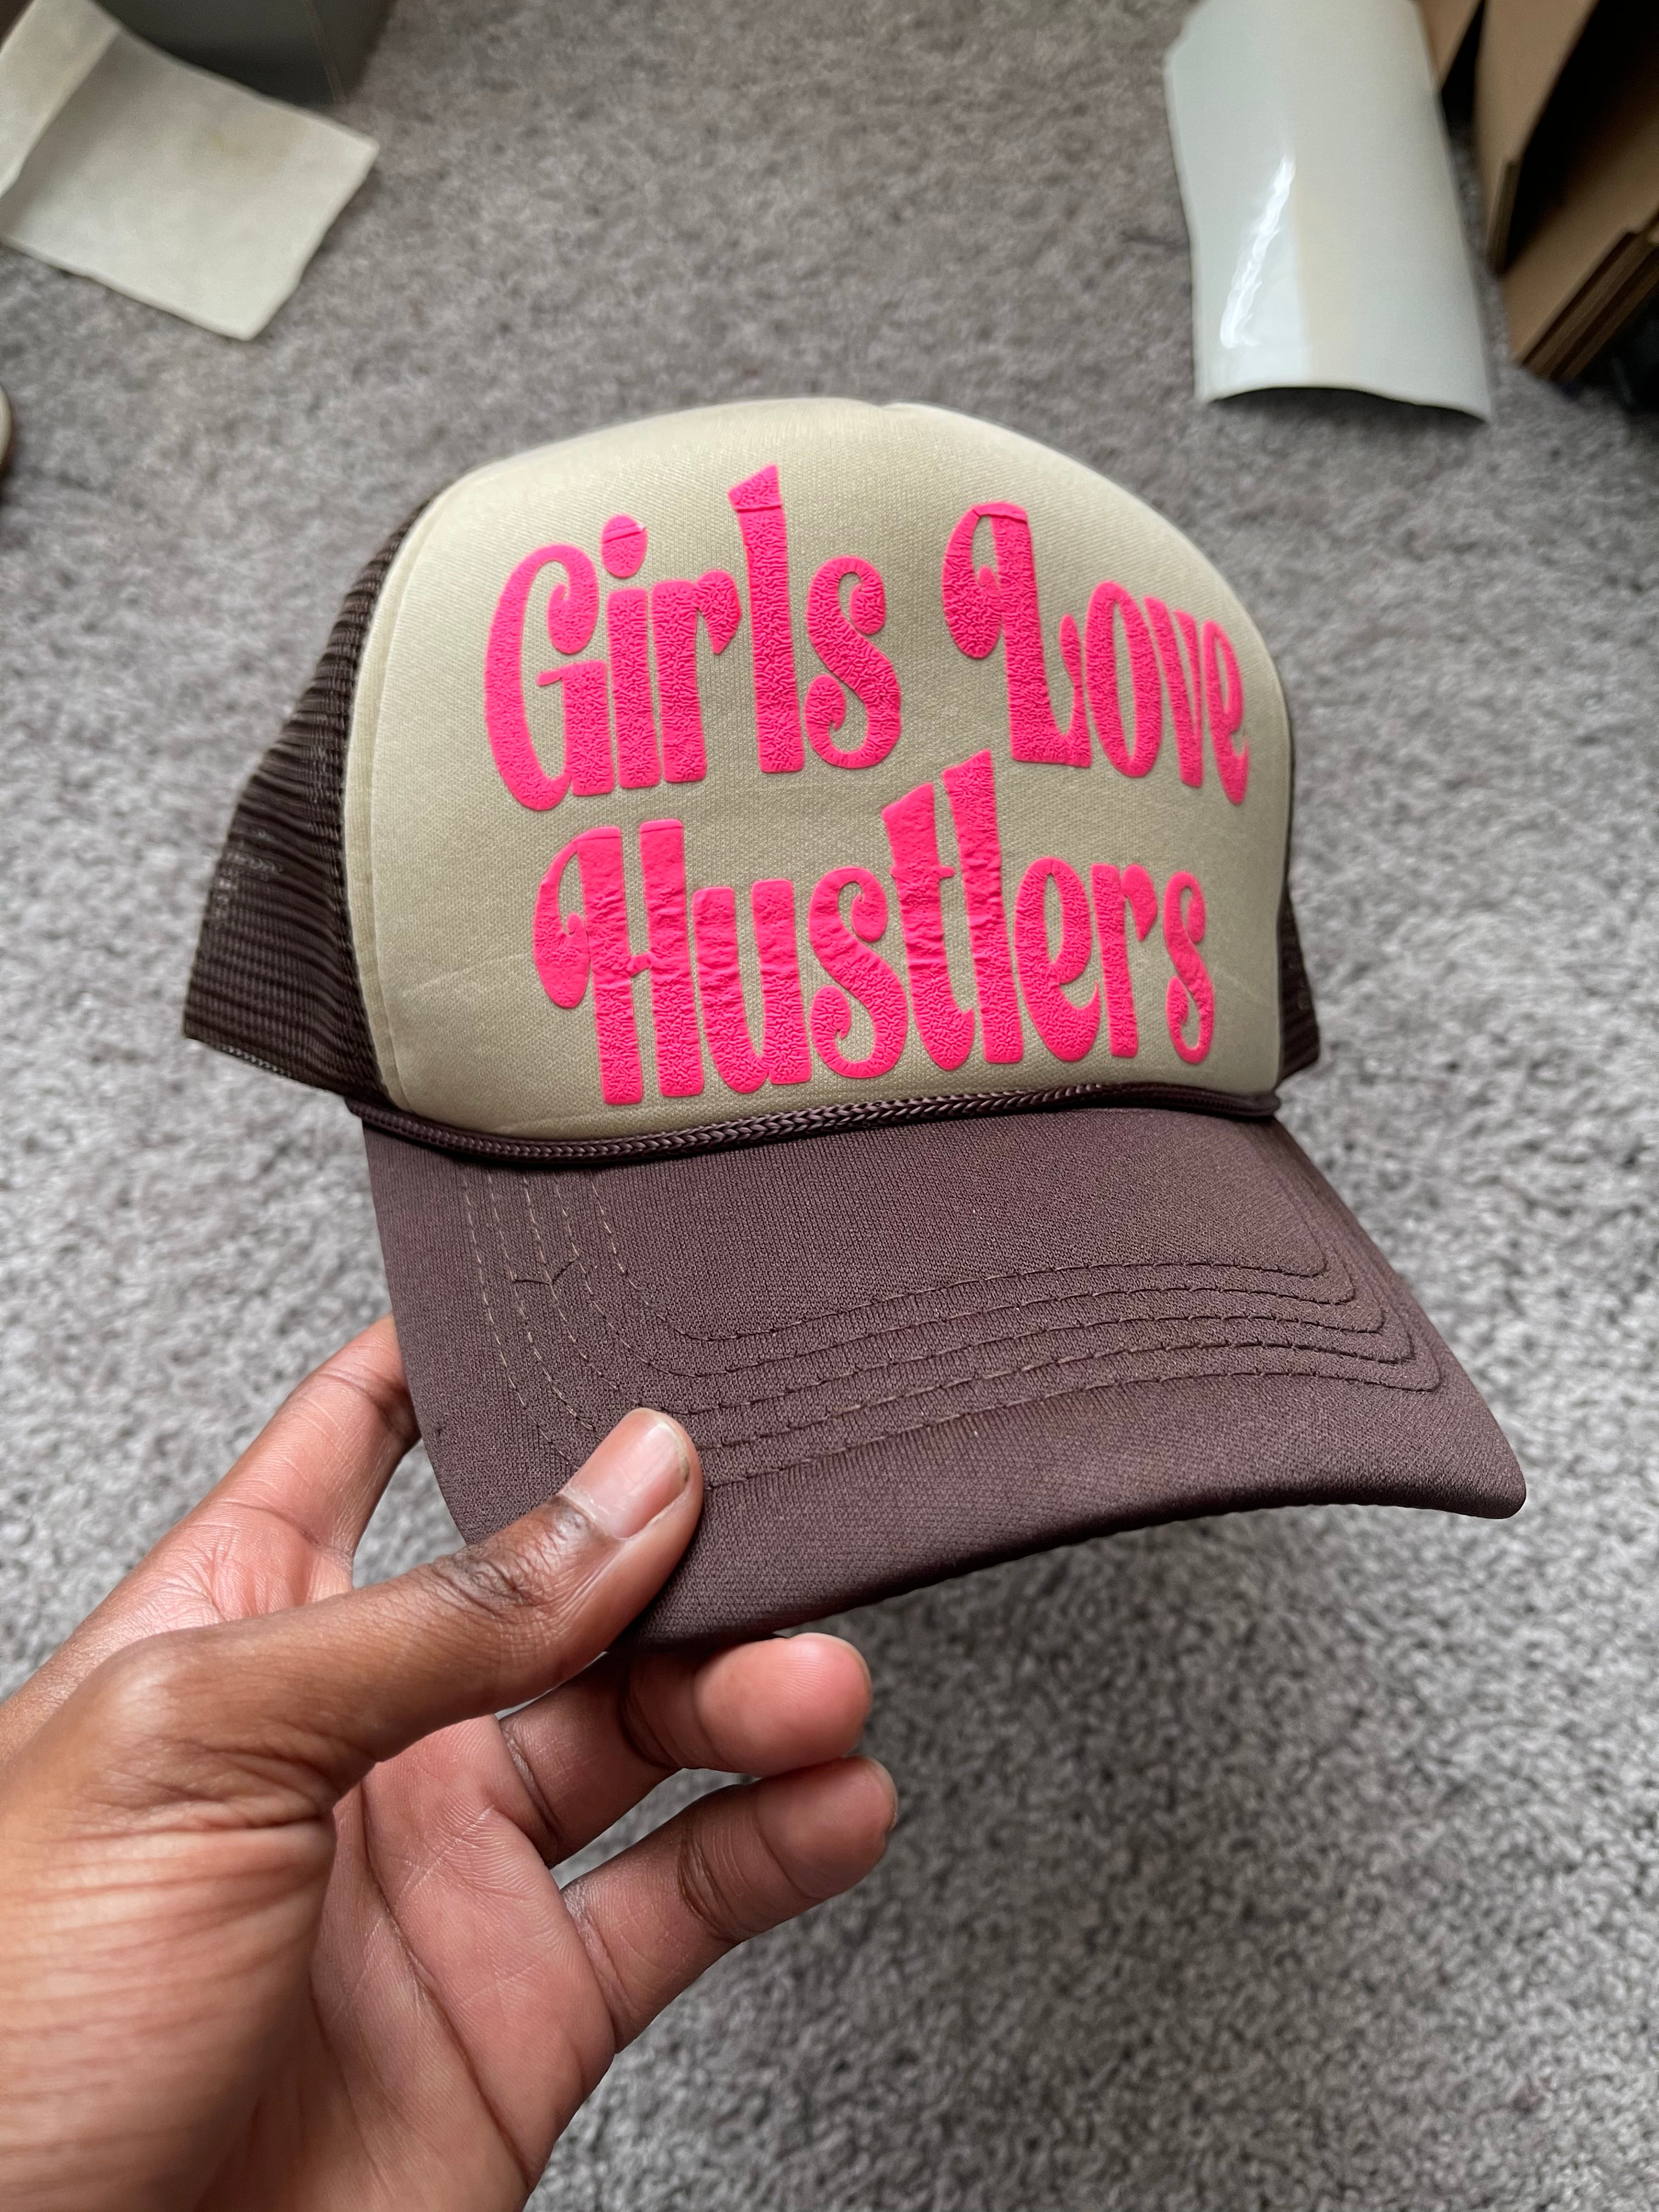 Best of Hustler girl on girl